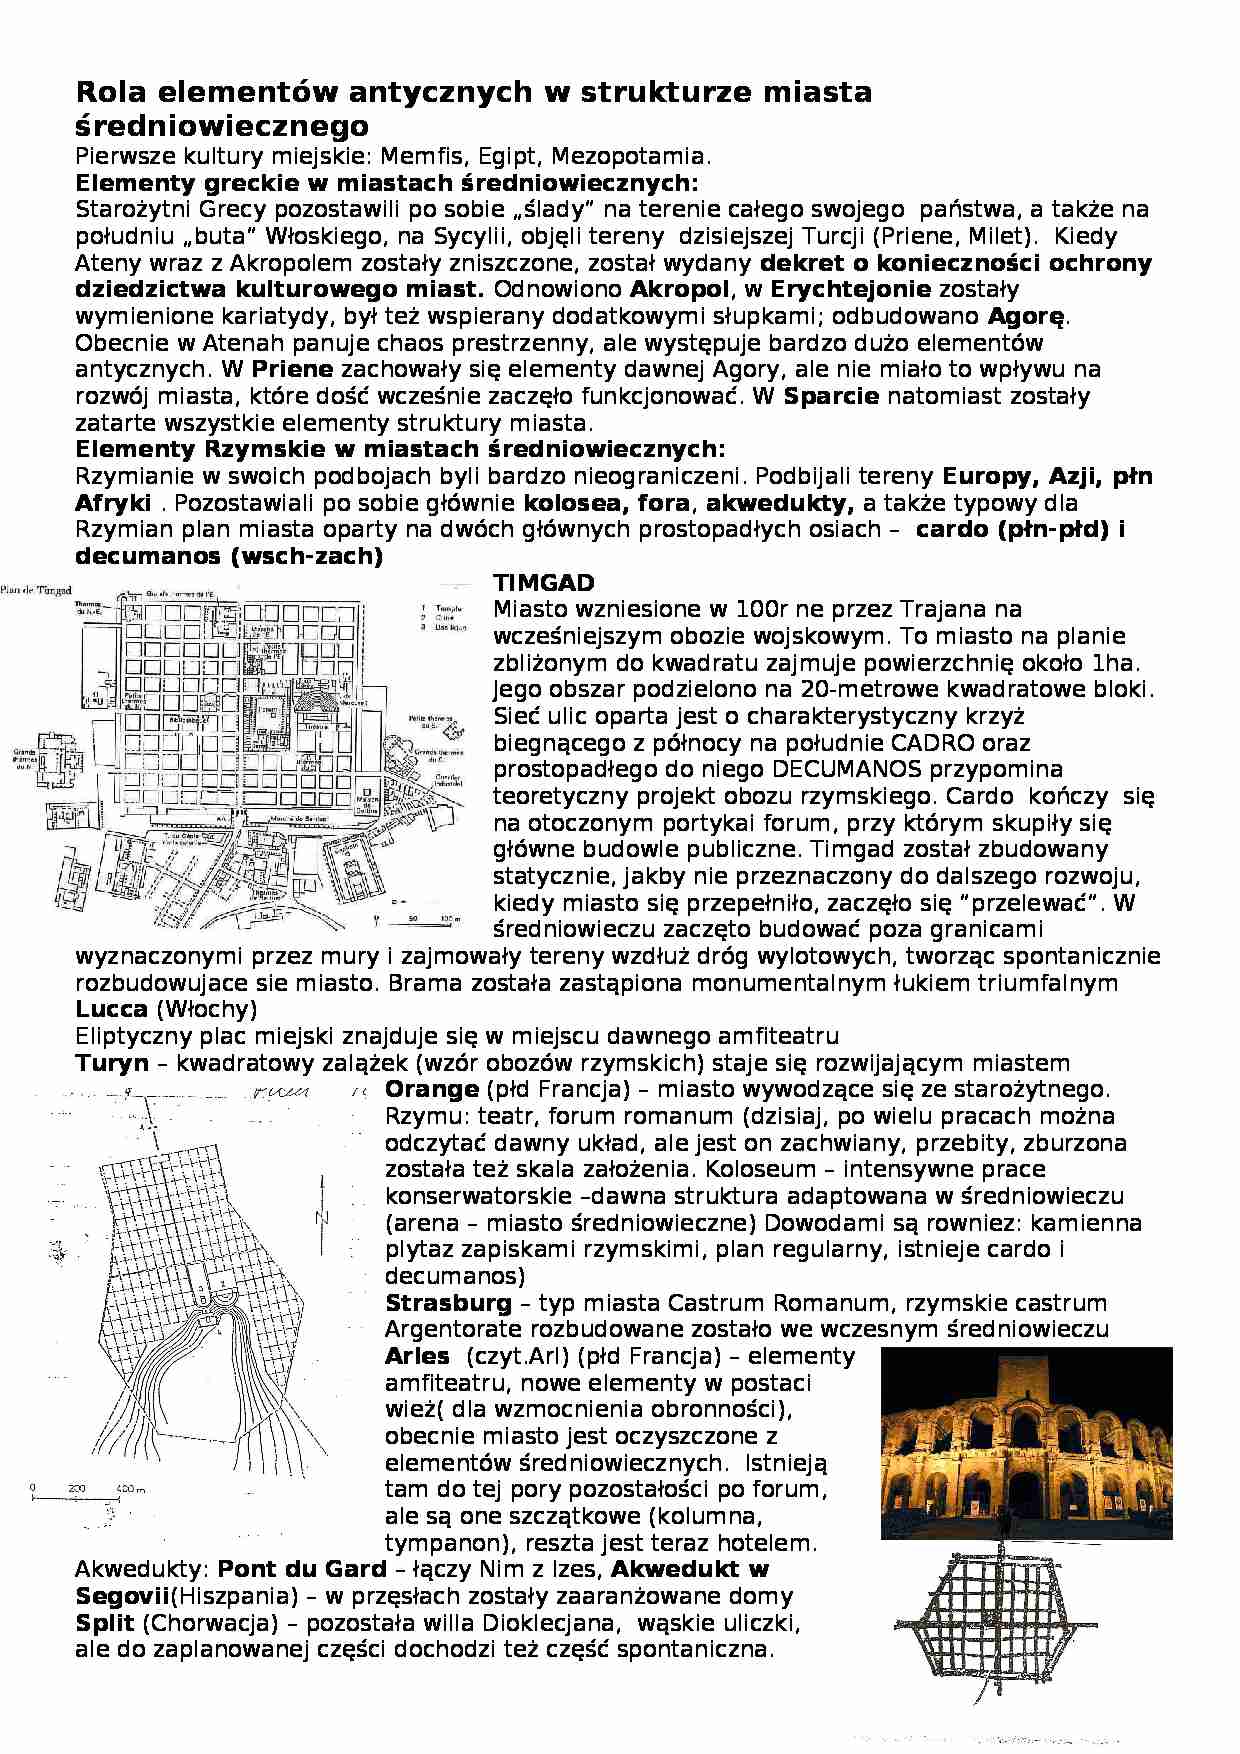 Rola elementów antycznych w strukturze miasta średniowiecznego - omówienie - strona 1